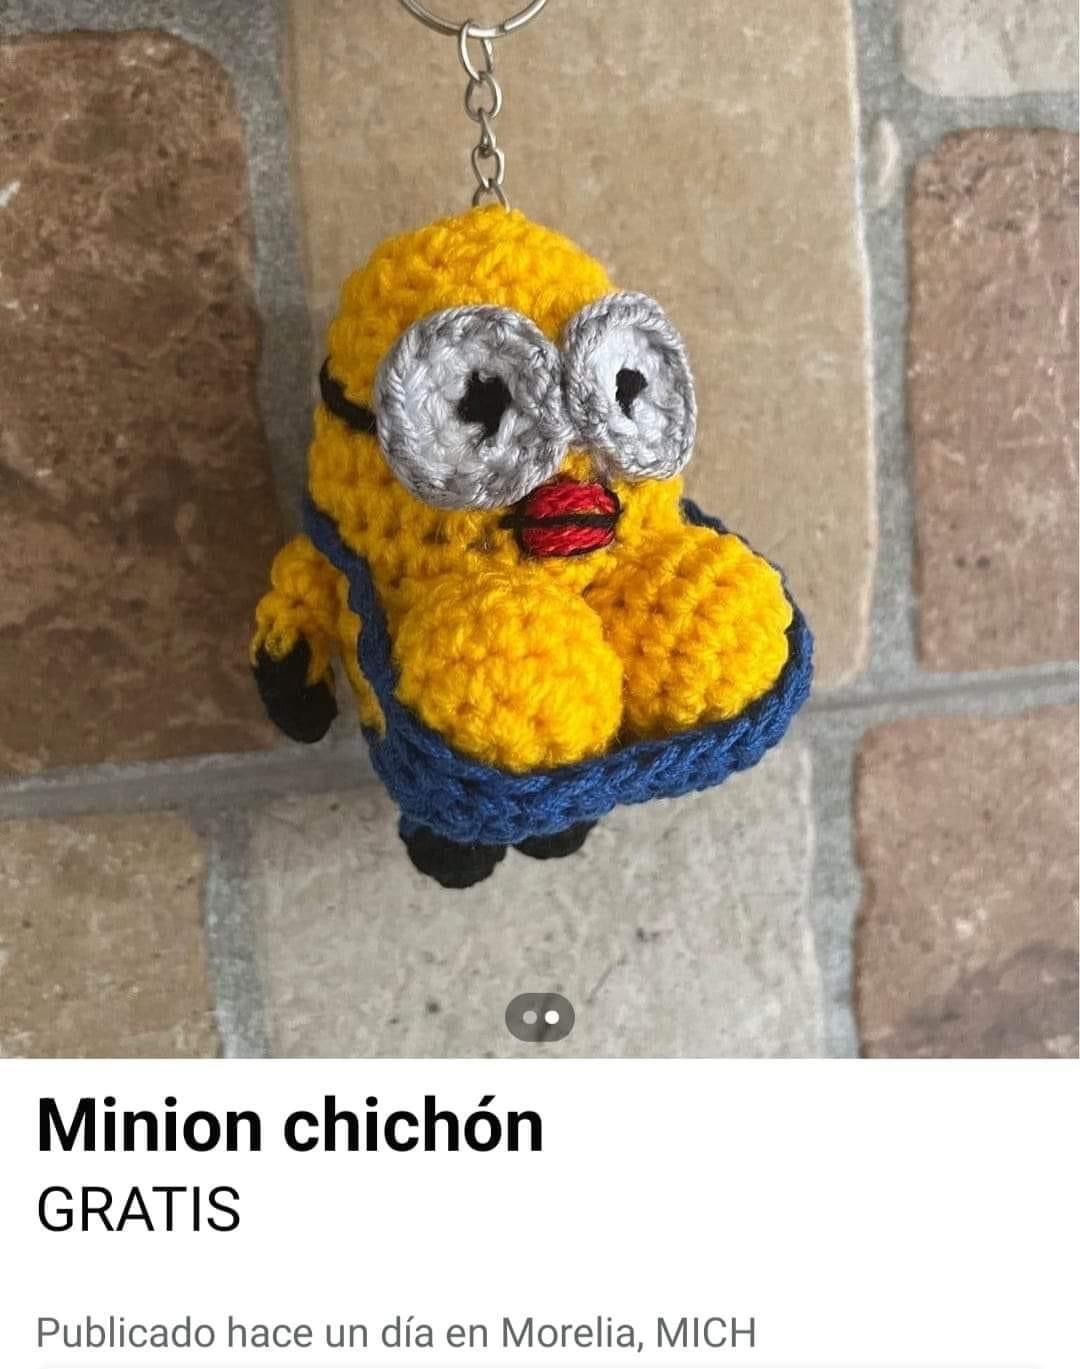 Minion Chichón - meme